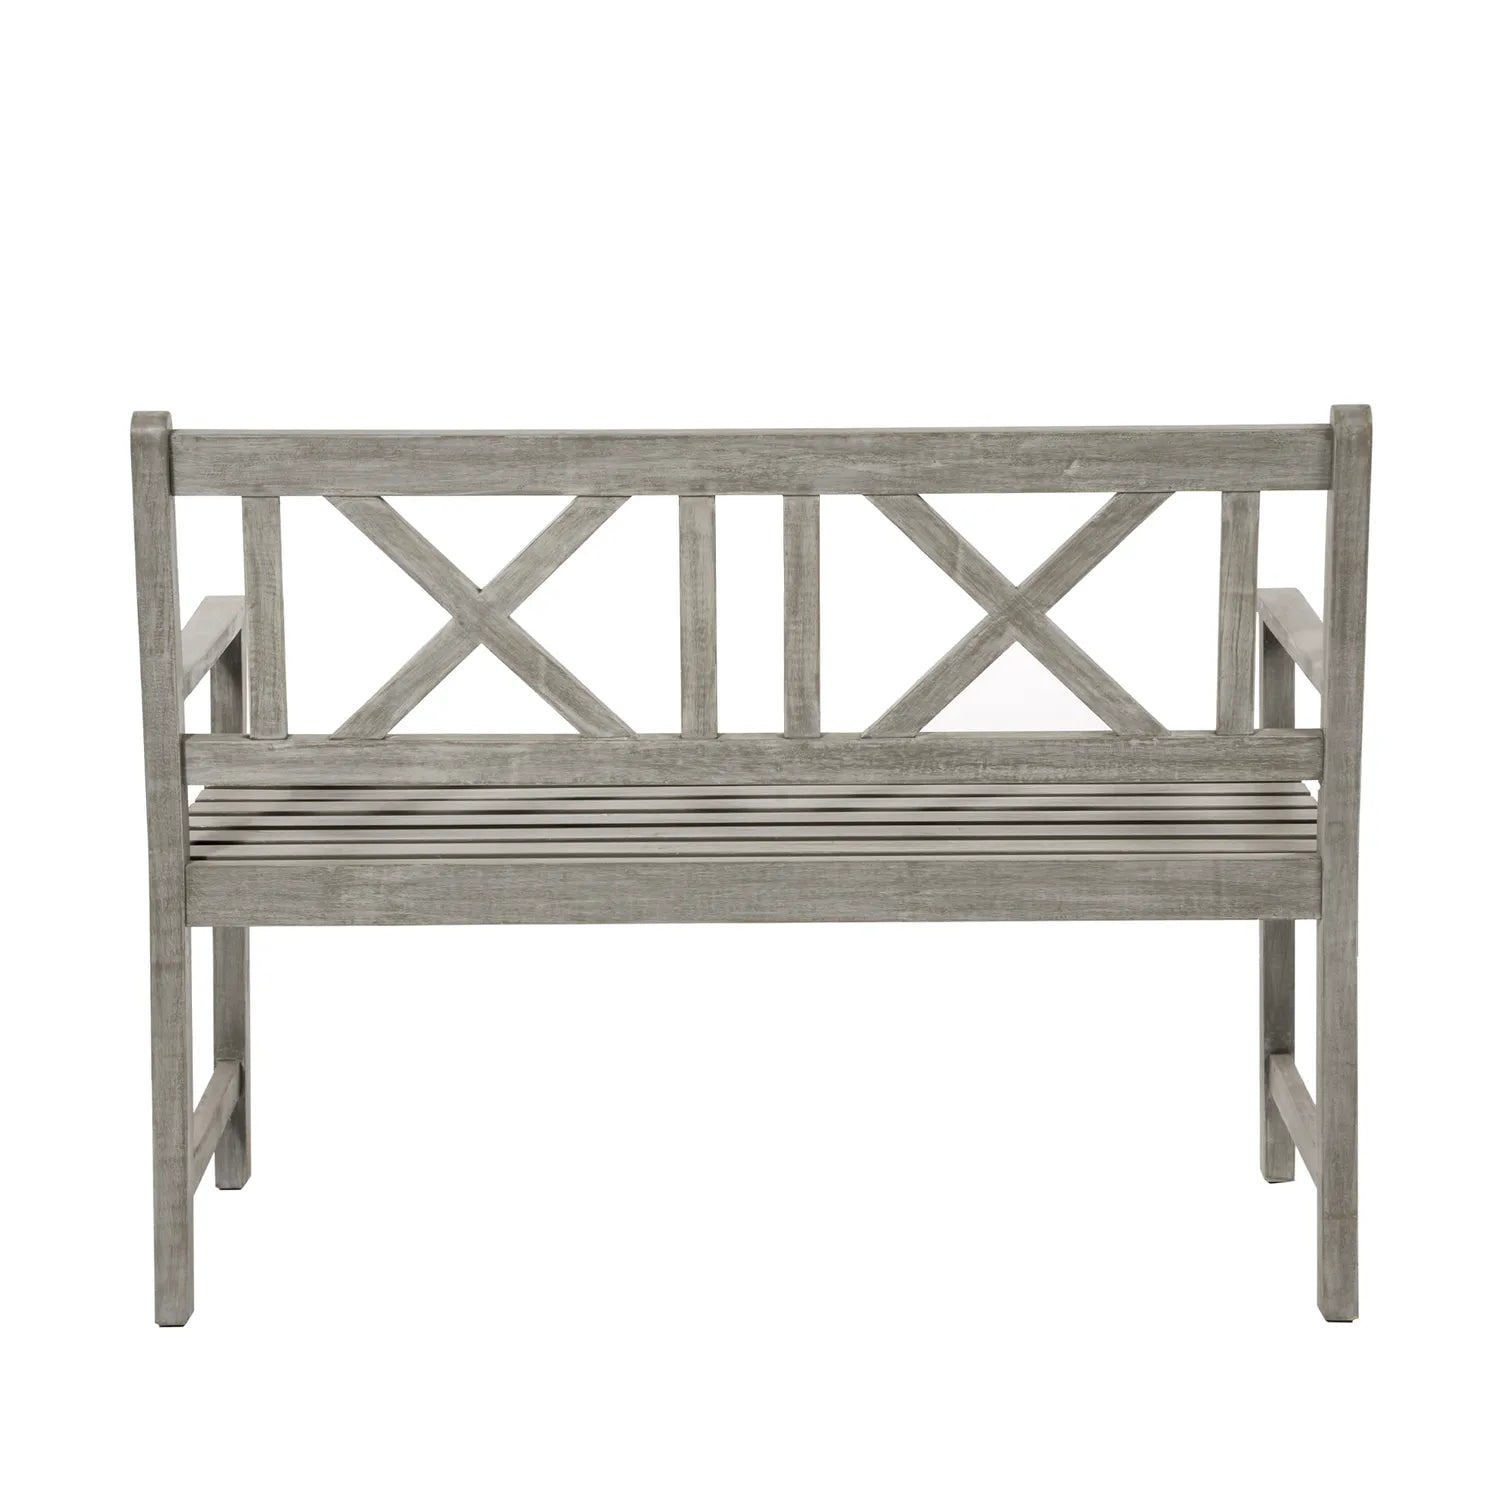 Berkshire Antique Grey Acacia Wood 2 Seater Garden Bench – Click Style